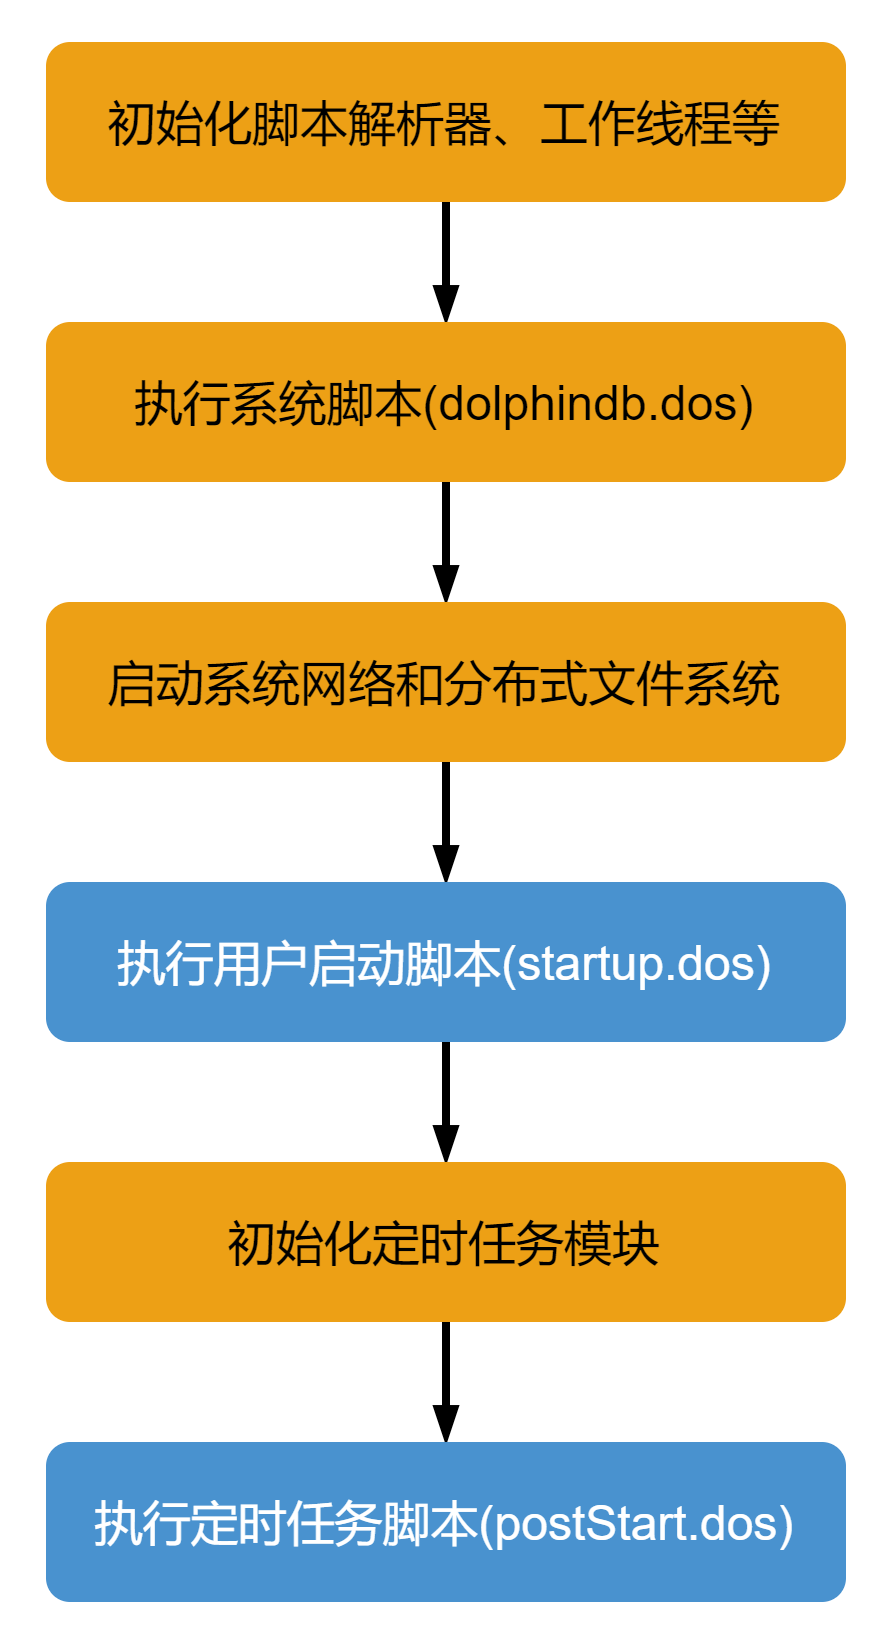 DolphinDB 系统启动流程